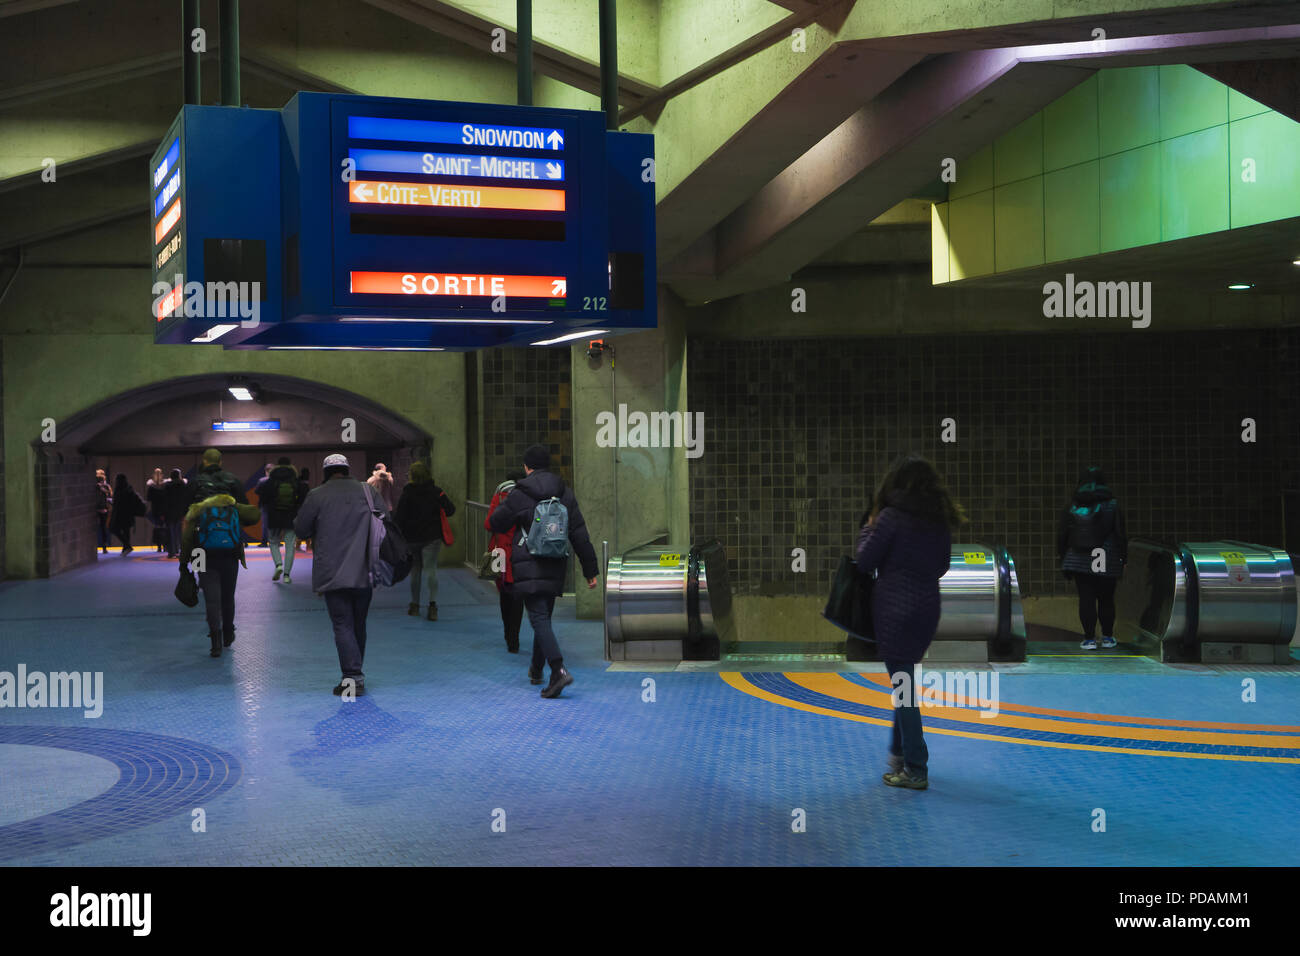 Les voyageurs se déplaçant dans la station de métro Jean-Talon, Montréal, province de Québec, Canada. Banque D'Images